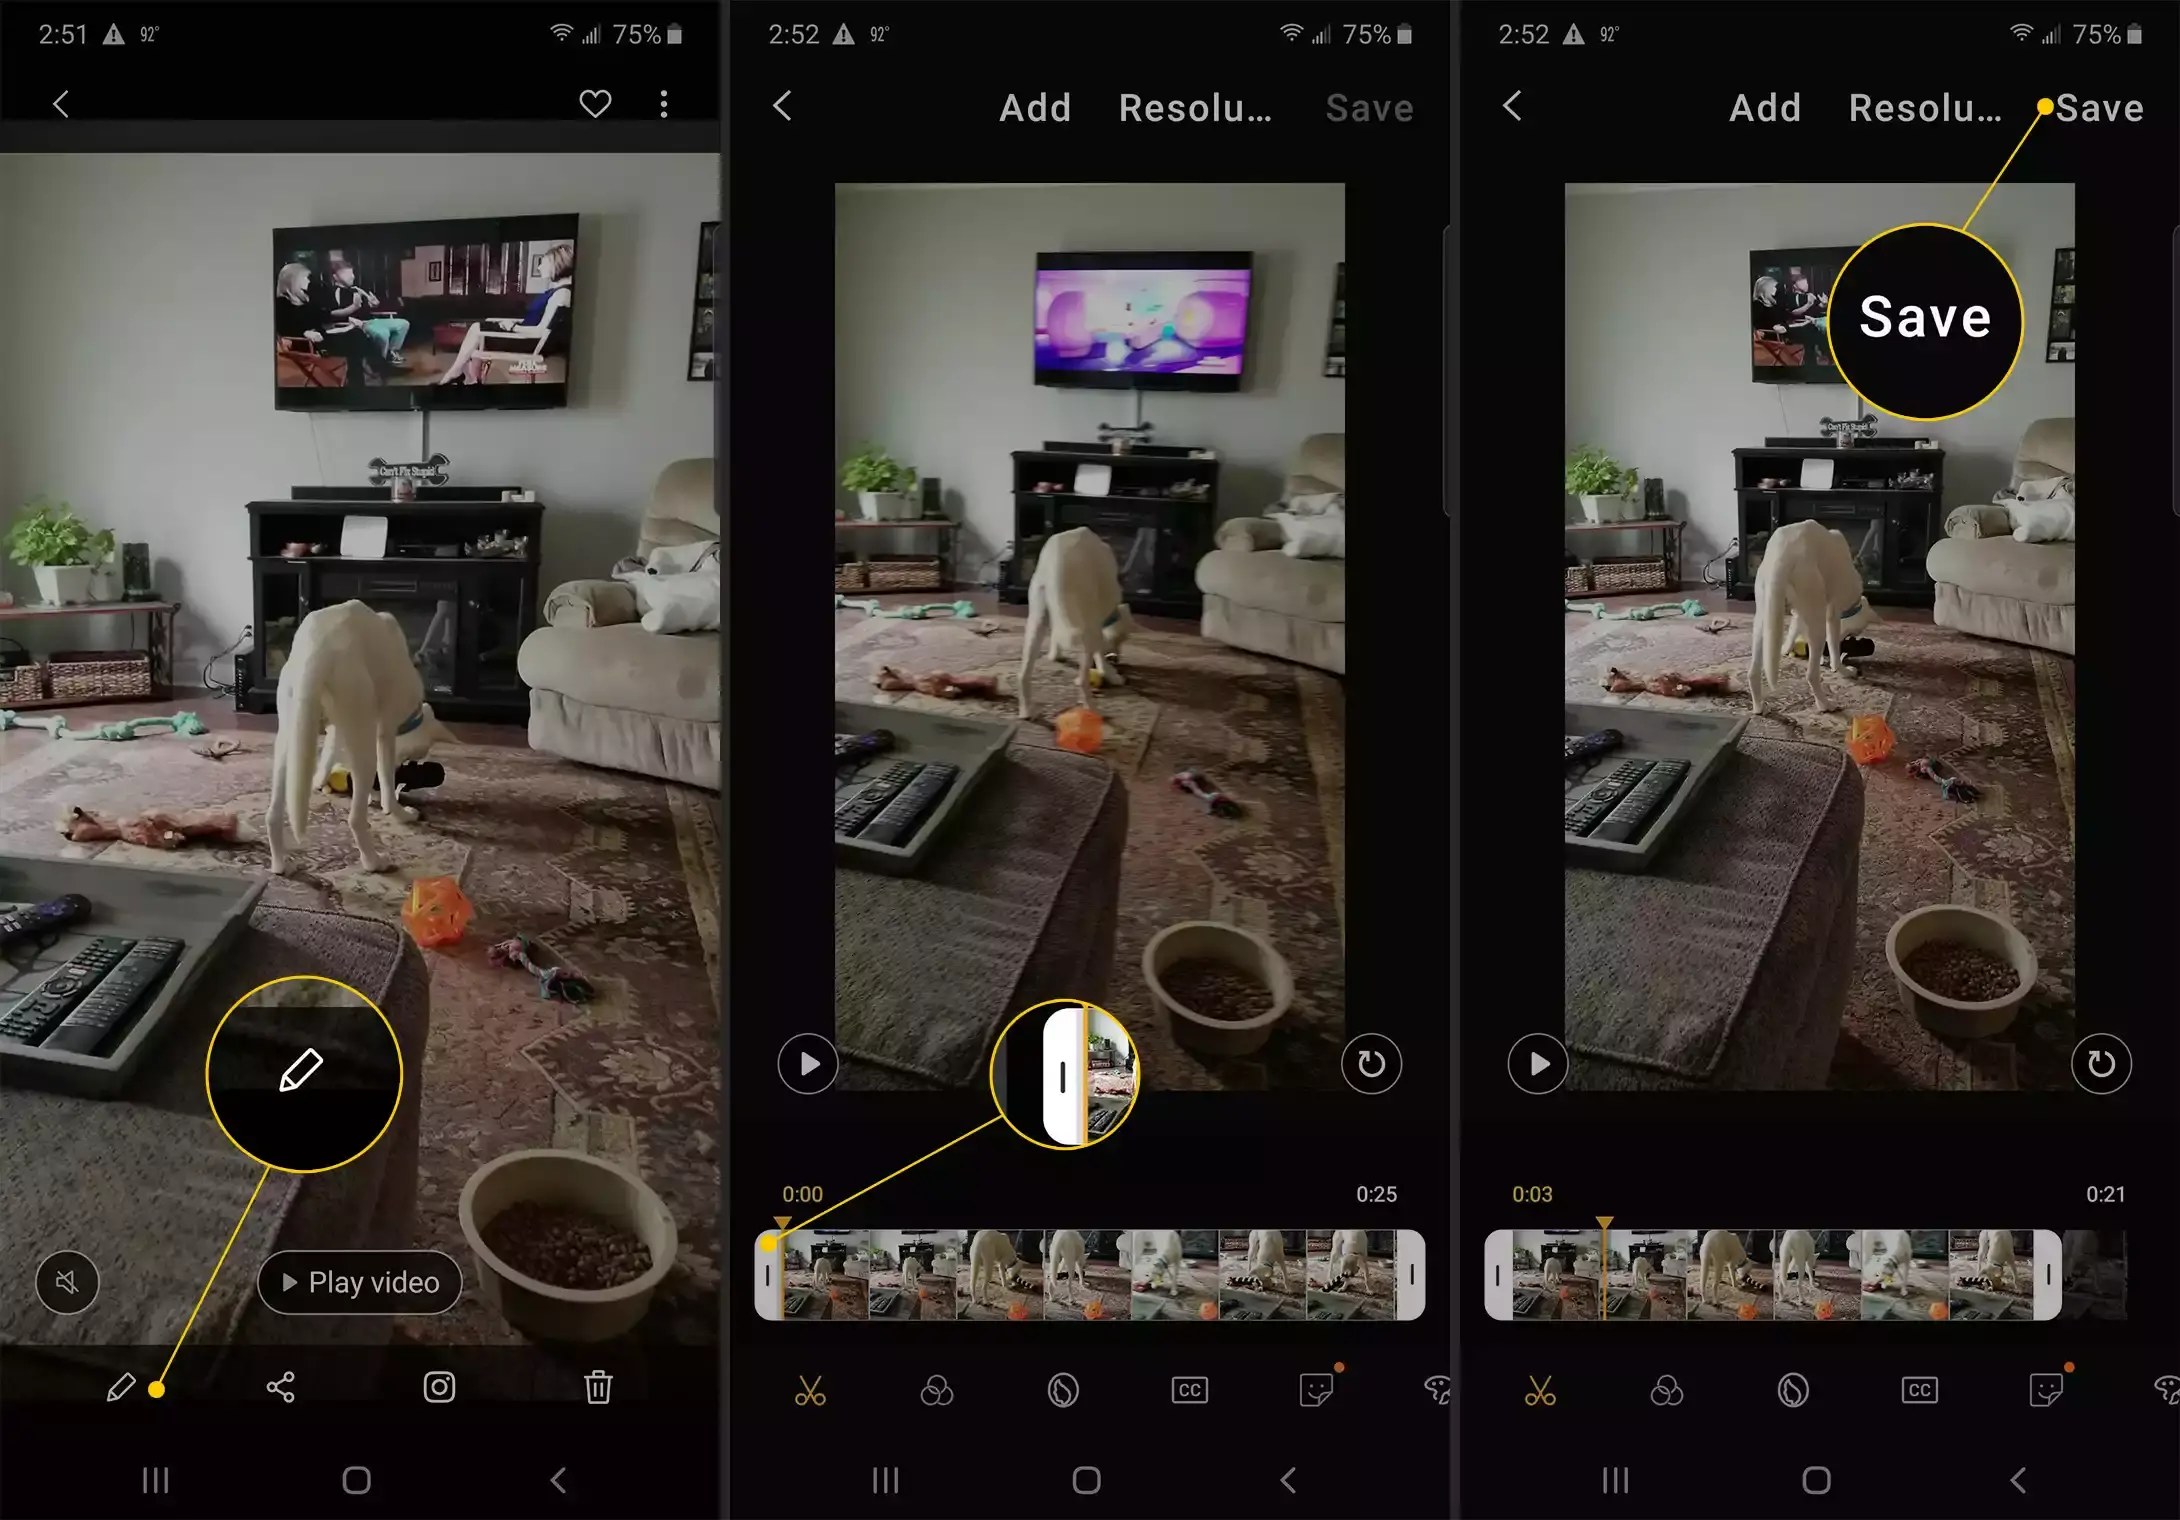 Bleistiftsymbol, Zuschneidegriff, Schaltfläche Speichern in Android-Videobearbeitung